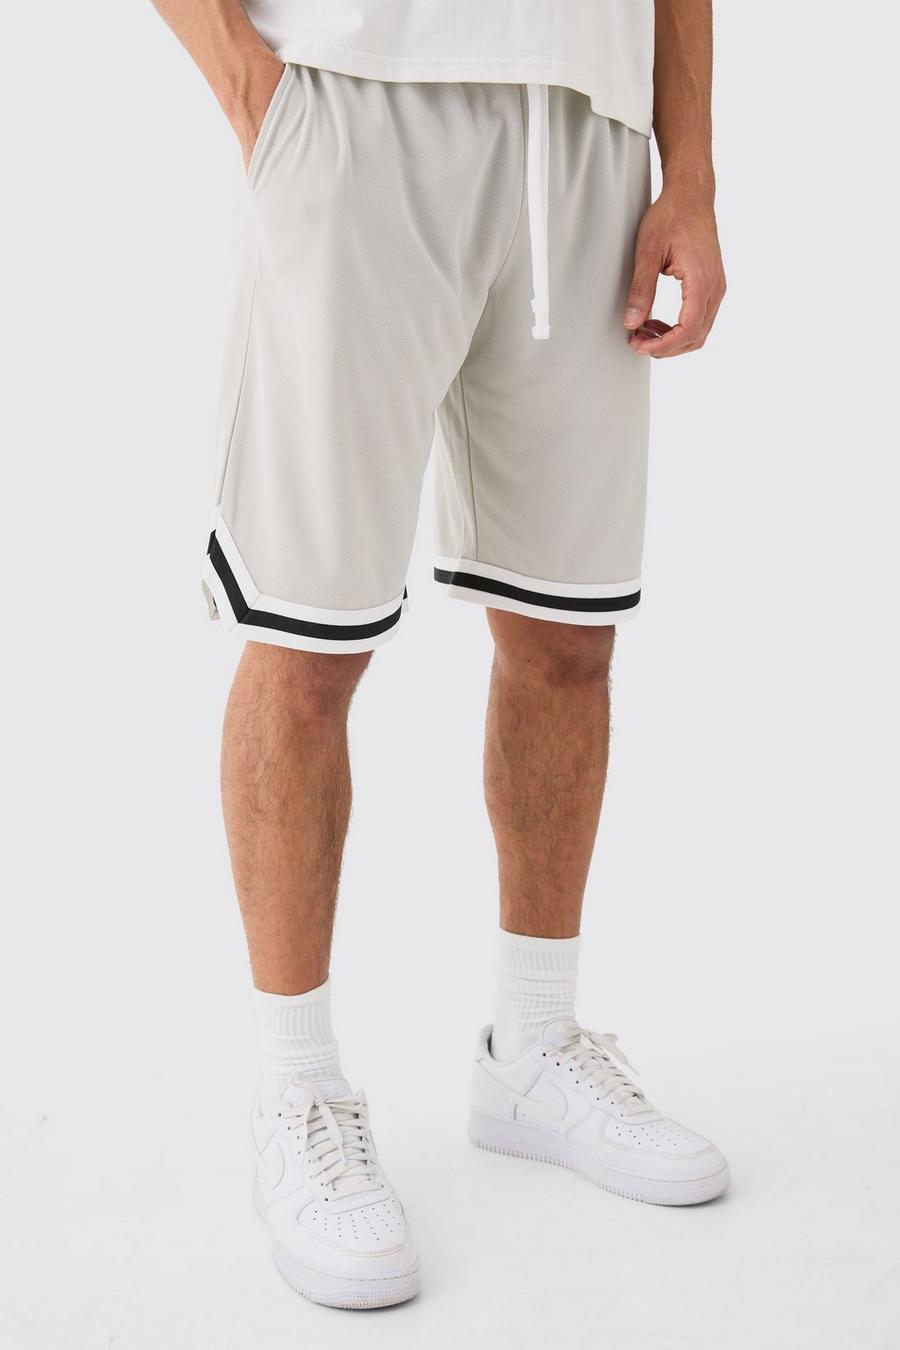 Pantalón corto holgado de malla estilo baloncesto, Light grey